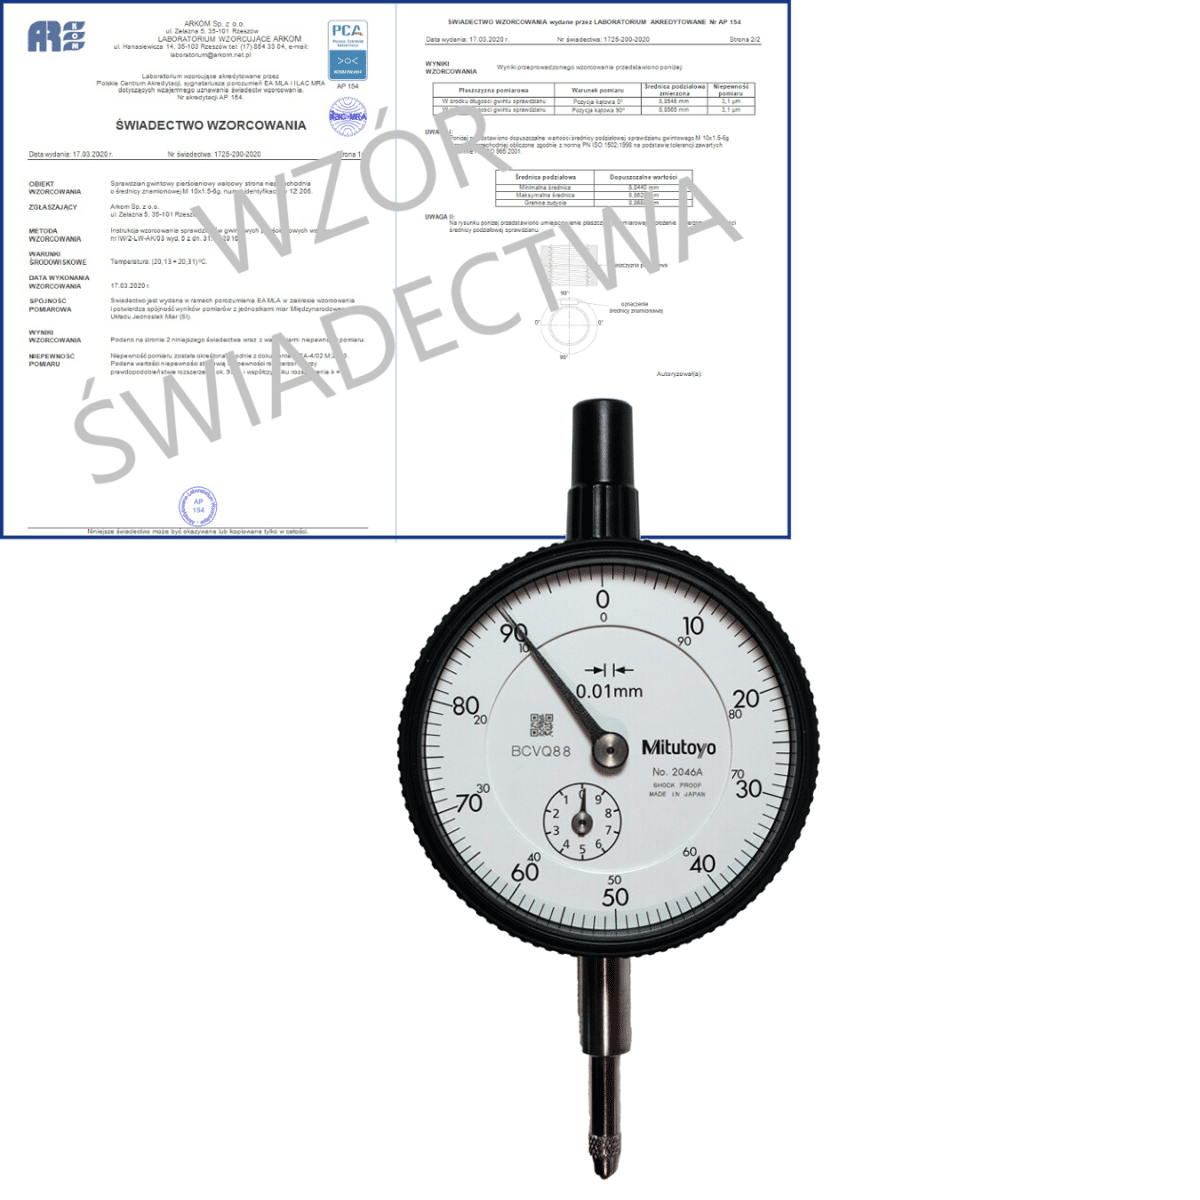 MITUTOYO czujnik zegarowy 0.01-10/0.01 mm + świadectwo wzorcowania PCA 2046A-WZORC (Zdjęcie 1)